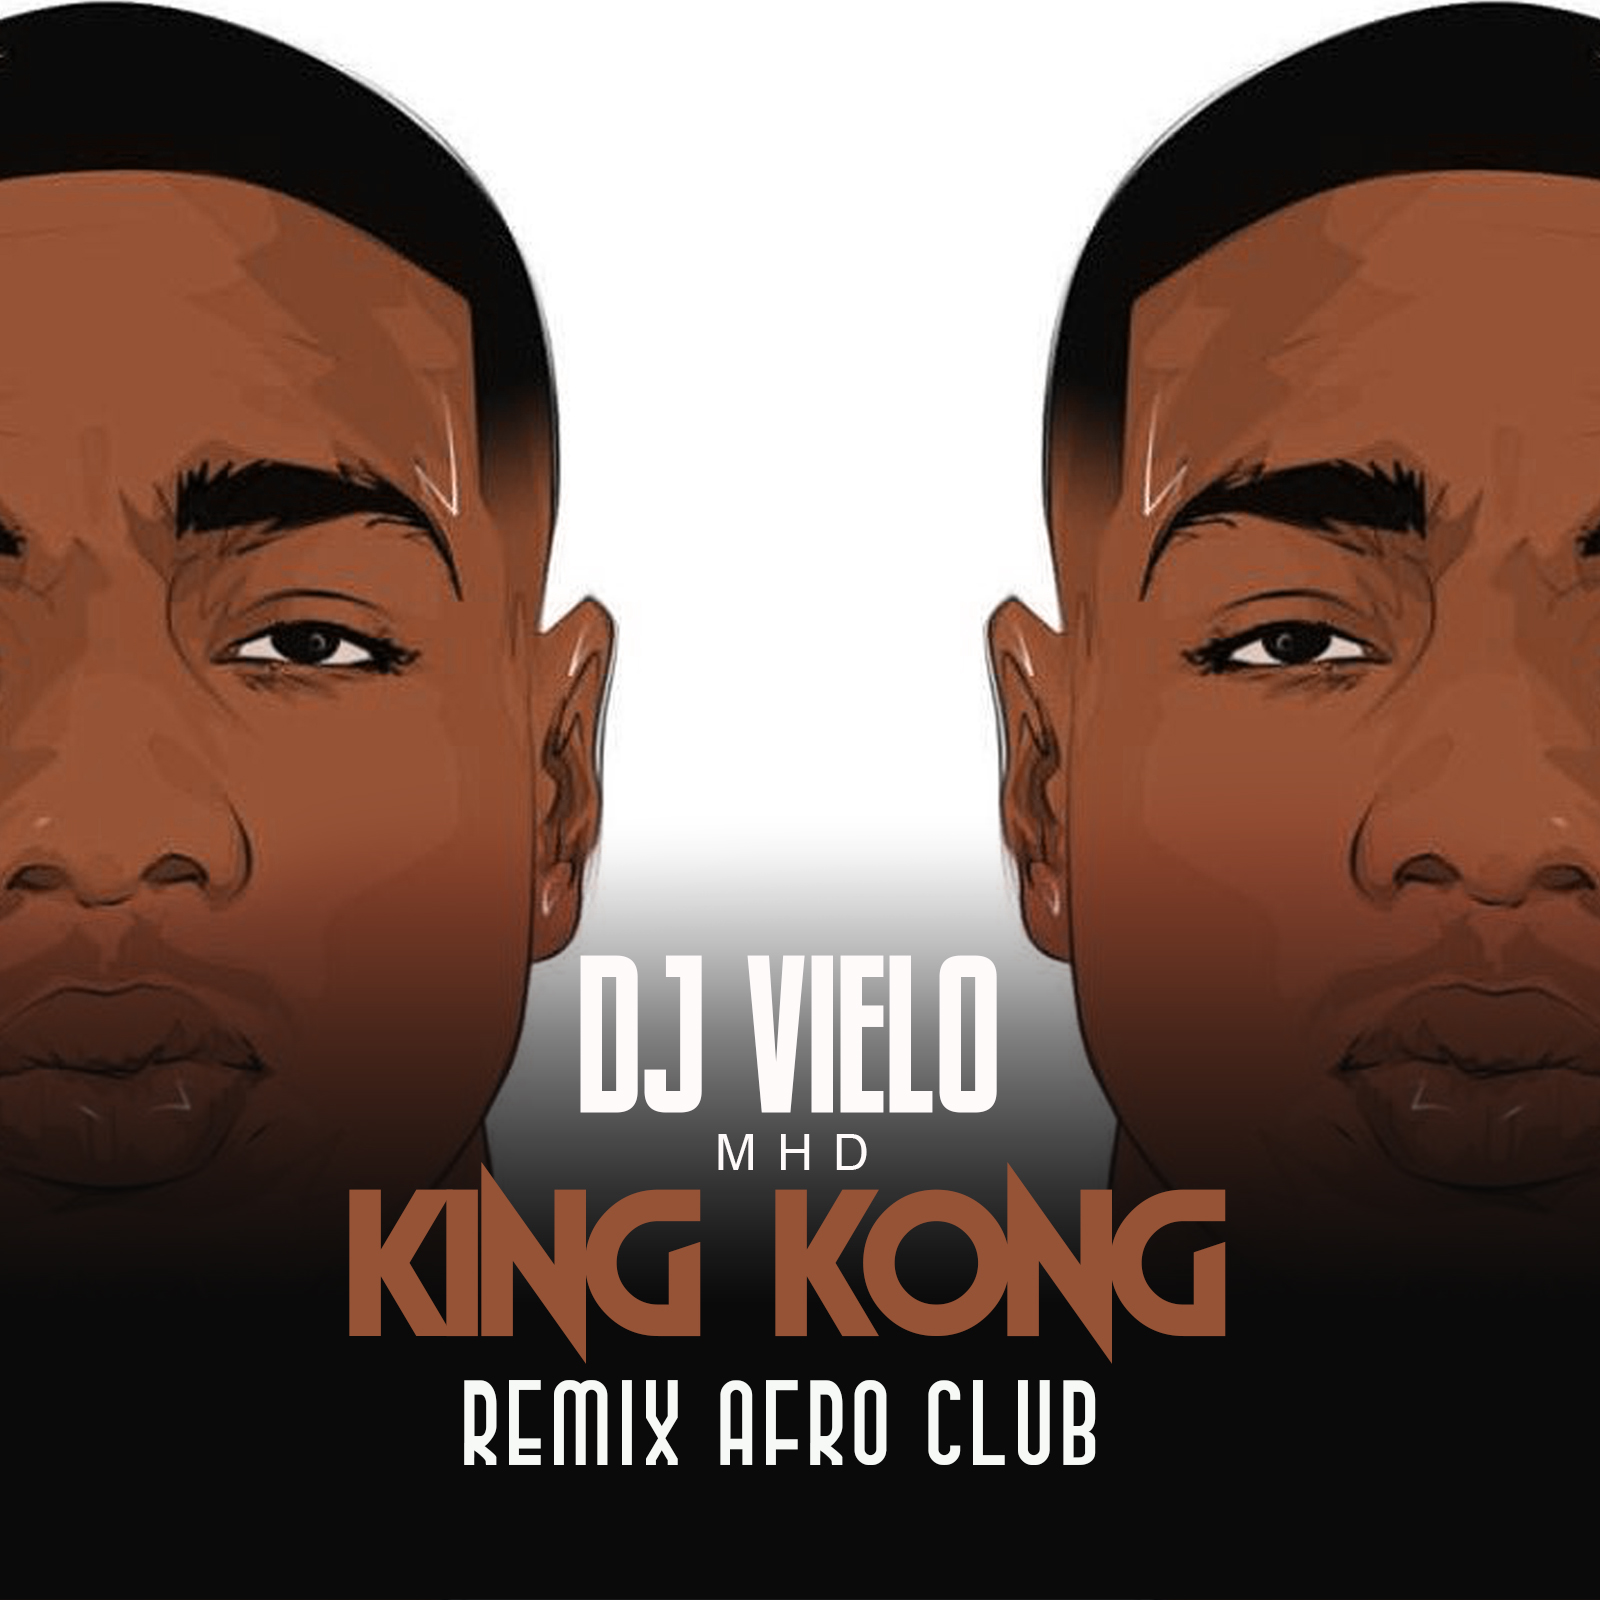 Pakua Dj Vielo X MHD - AFRO TRAP Part.11 (King Kong) Remix Afro Club DISPO SUR SPOTIFY, DEEZER, ITUNES